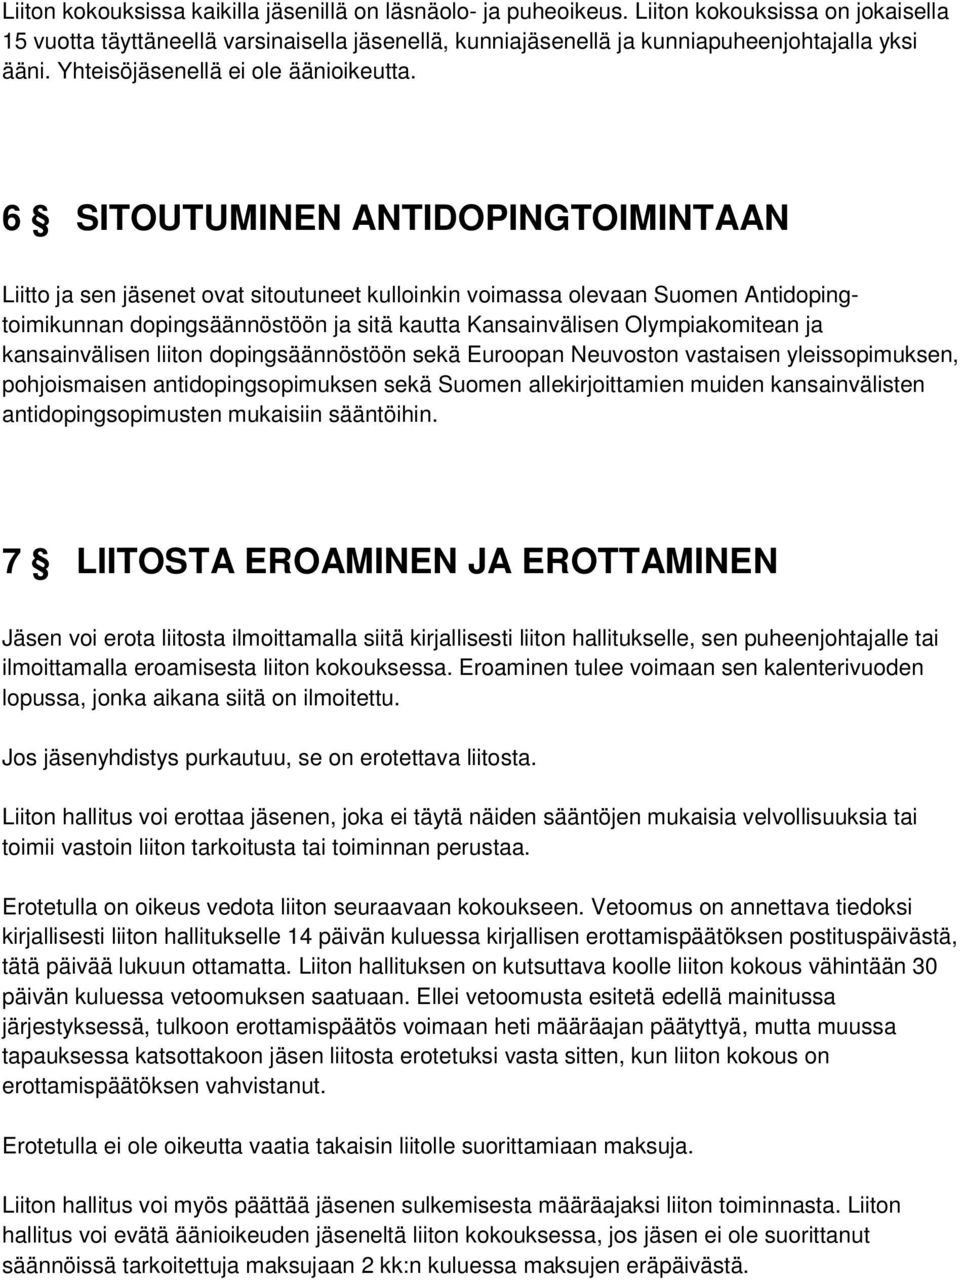 6 SITOUTUMINEN ANTIDOPINGTOIMINTAAN Liitto ja sen jäsenet ovat sitoutuneet kulloinkin voimassa olevaan Suomen Antidopingtoimikunnan dopingsäännöstöön ja sitä kautta Kansainvälisen Olympiakomitean ja